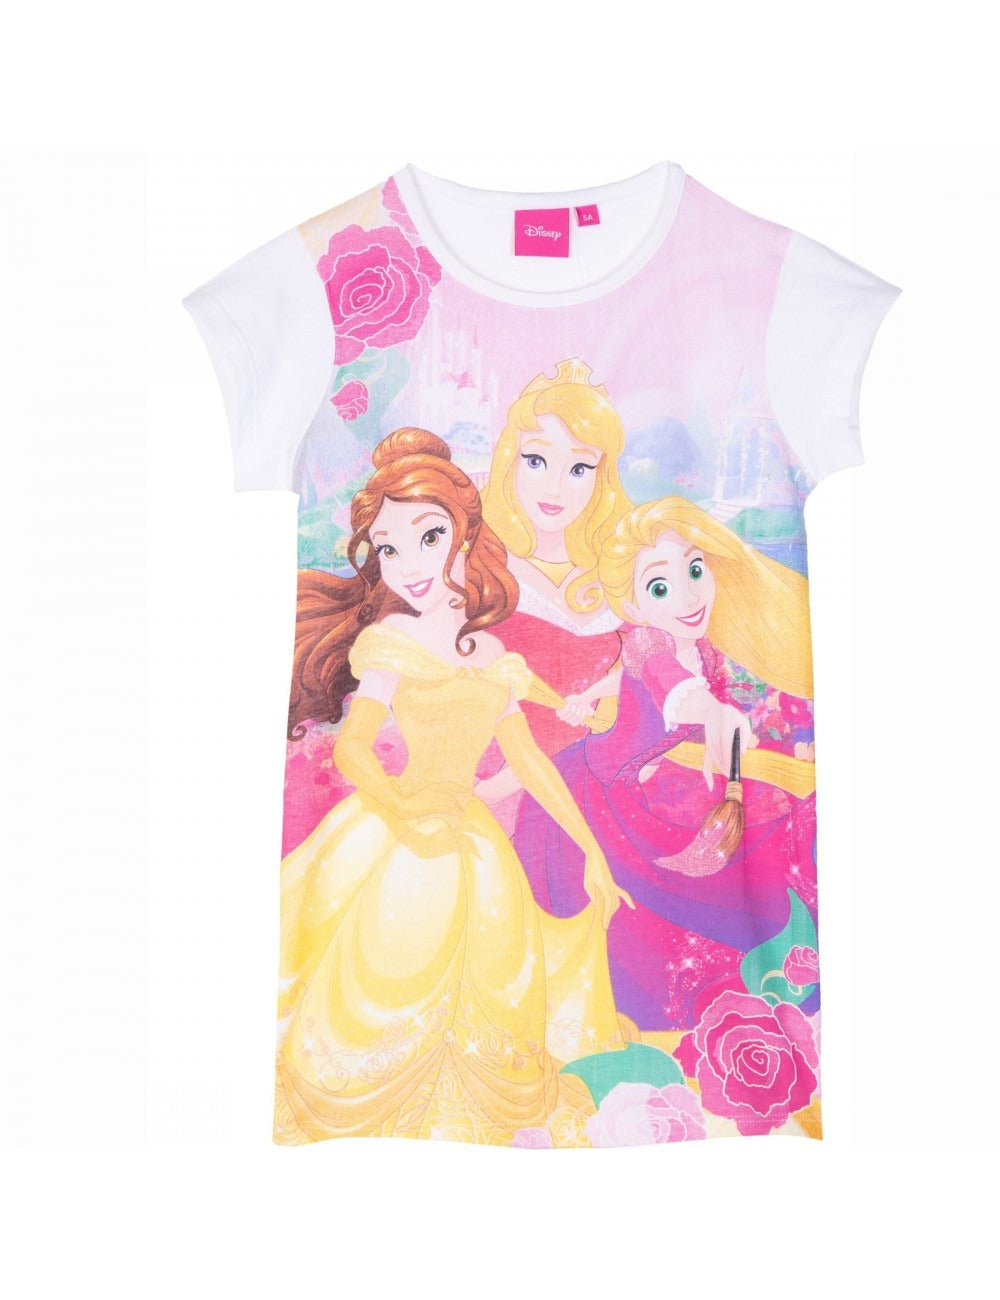 Disney Princess Kids Girls Cotton Round Neck Nightgown Nightie